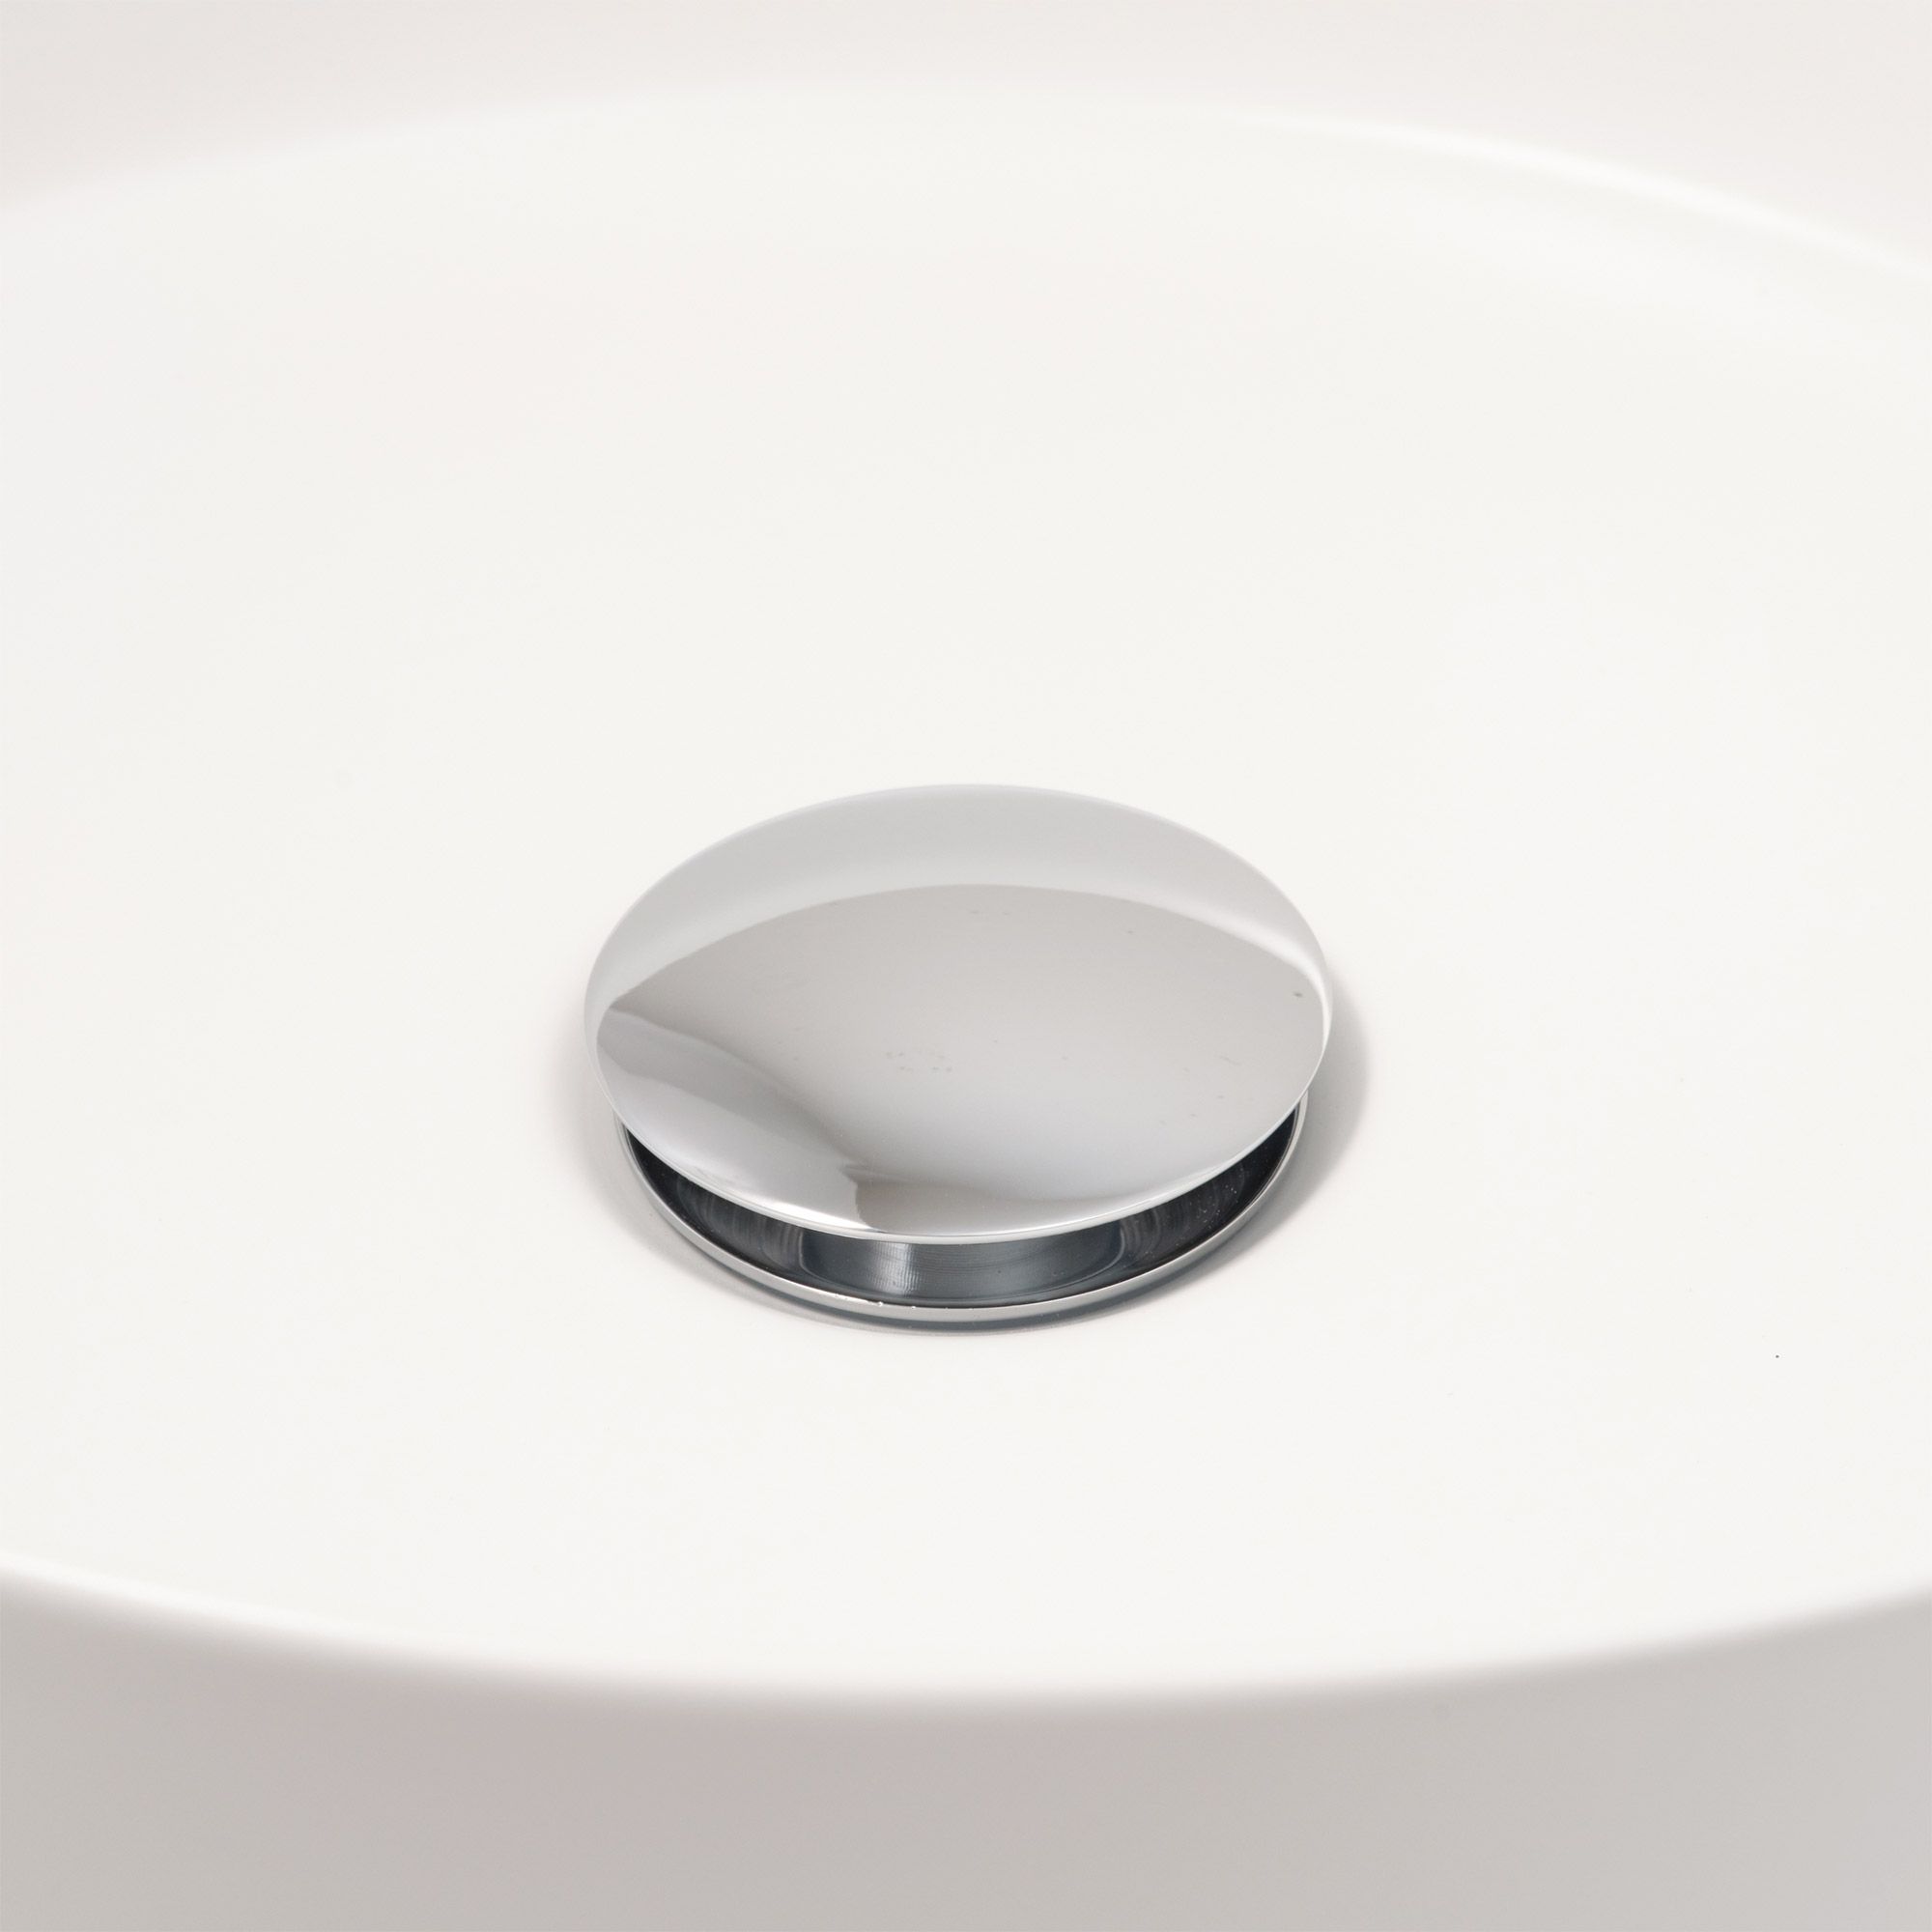 陶器の手洗い器 丸350 マットホワイト KB-PR012-03-G141 排水金具 プッシュカバー 金具を押すと水が溜められるようになります（完全に止水するものではありません）※手洗い器はオーバーフロー対応ではないため、水を溜める際は溢れないようご注意ください